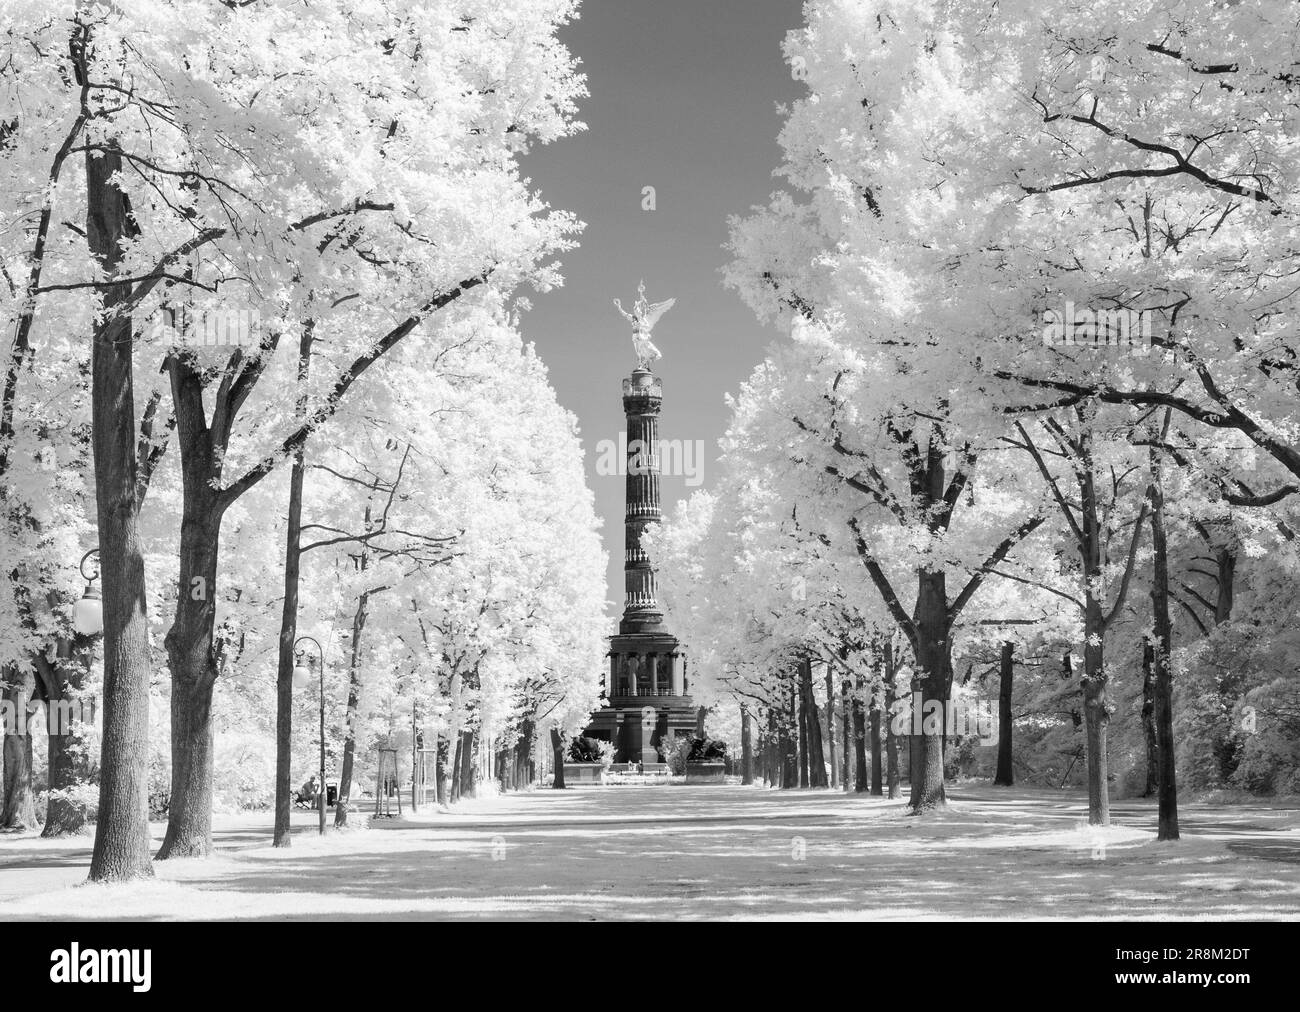 Siegessaeule colonna della vittoria tedesca nel parco Tiergarten, Berlino, in infrarosso bianco e nero Foto Stock